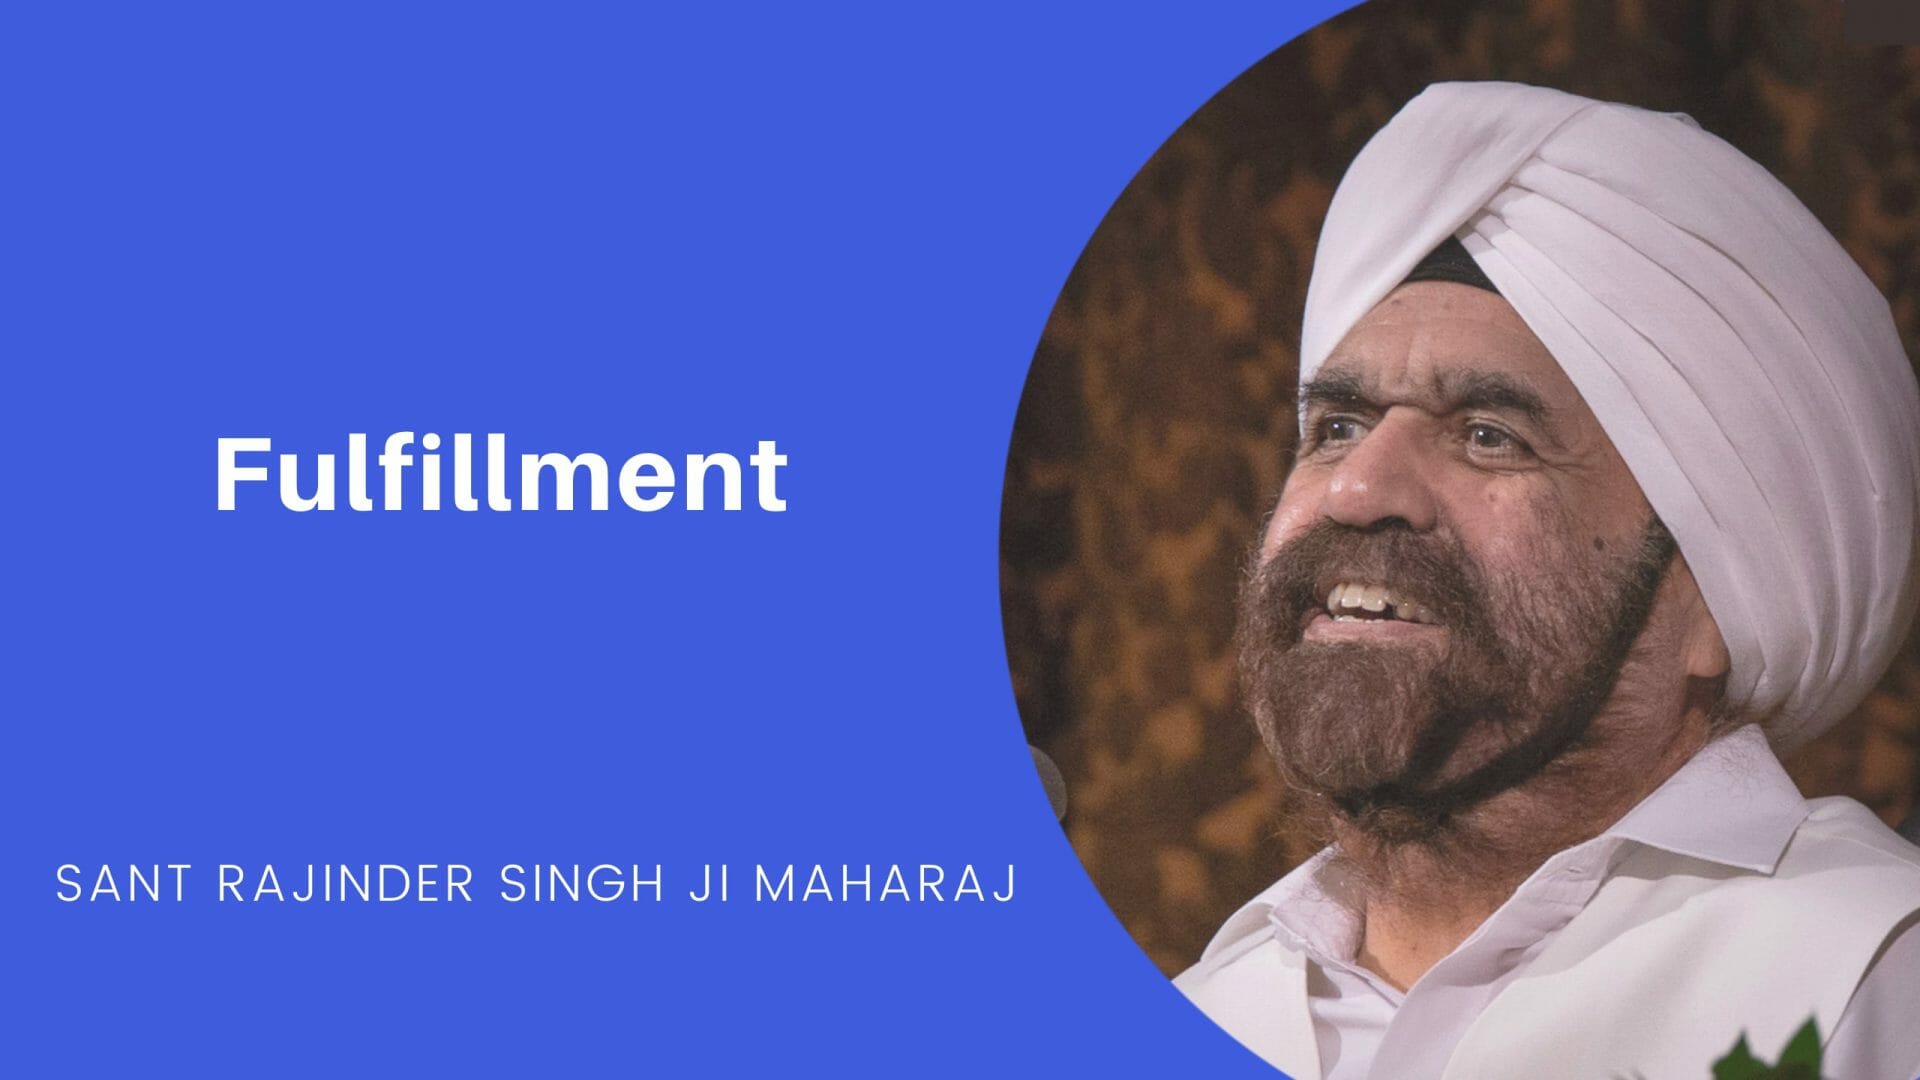 Fulfillment - an excerpt from a talk by Sant Rajinder Singh Ji Maharaj